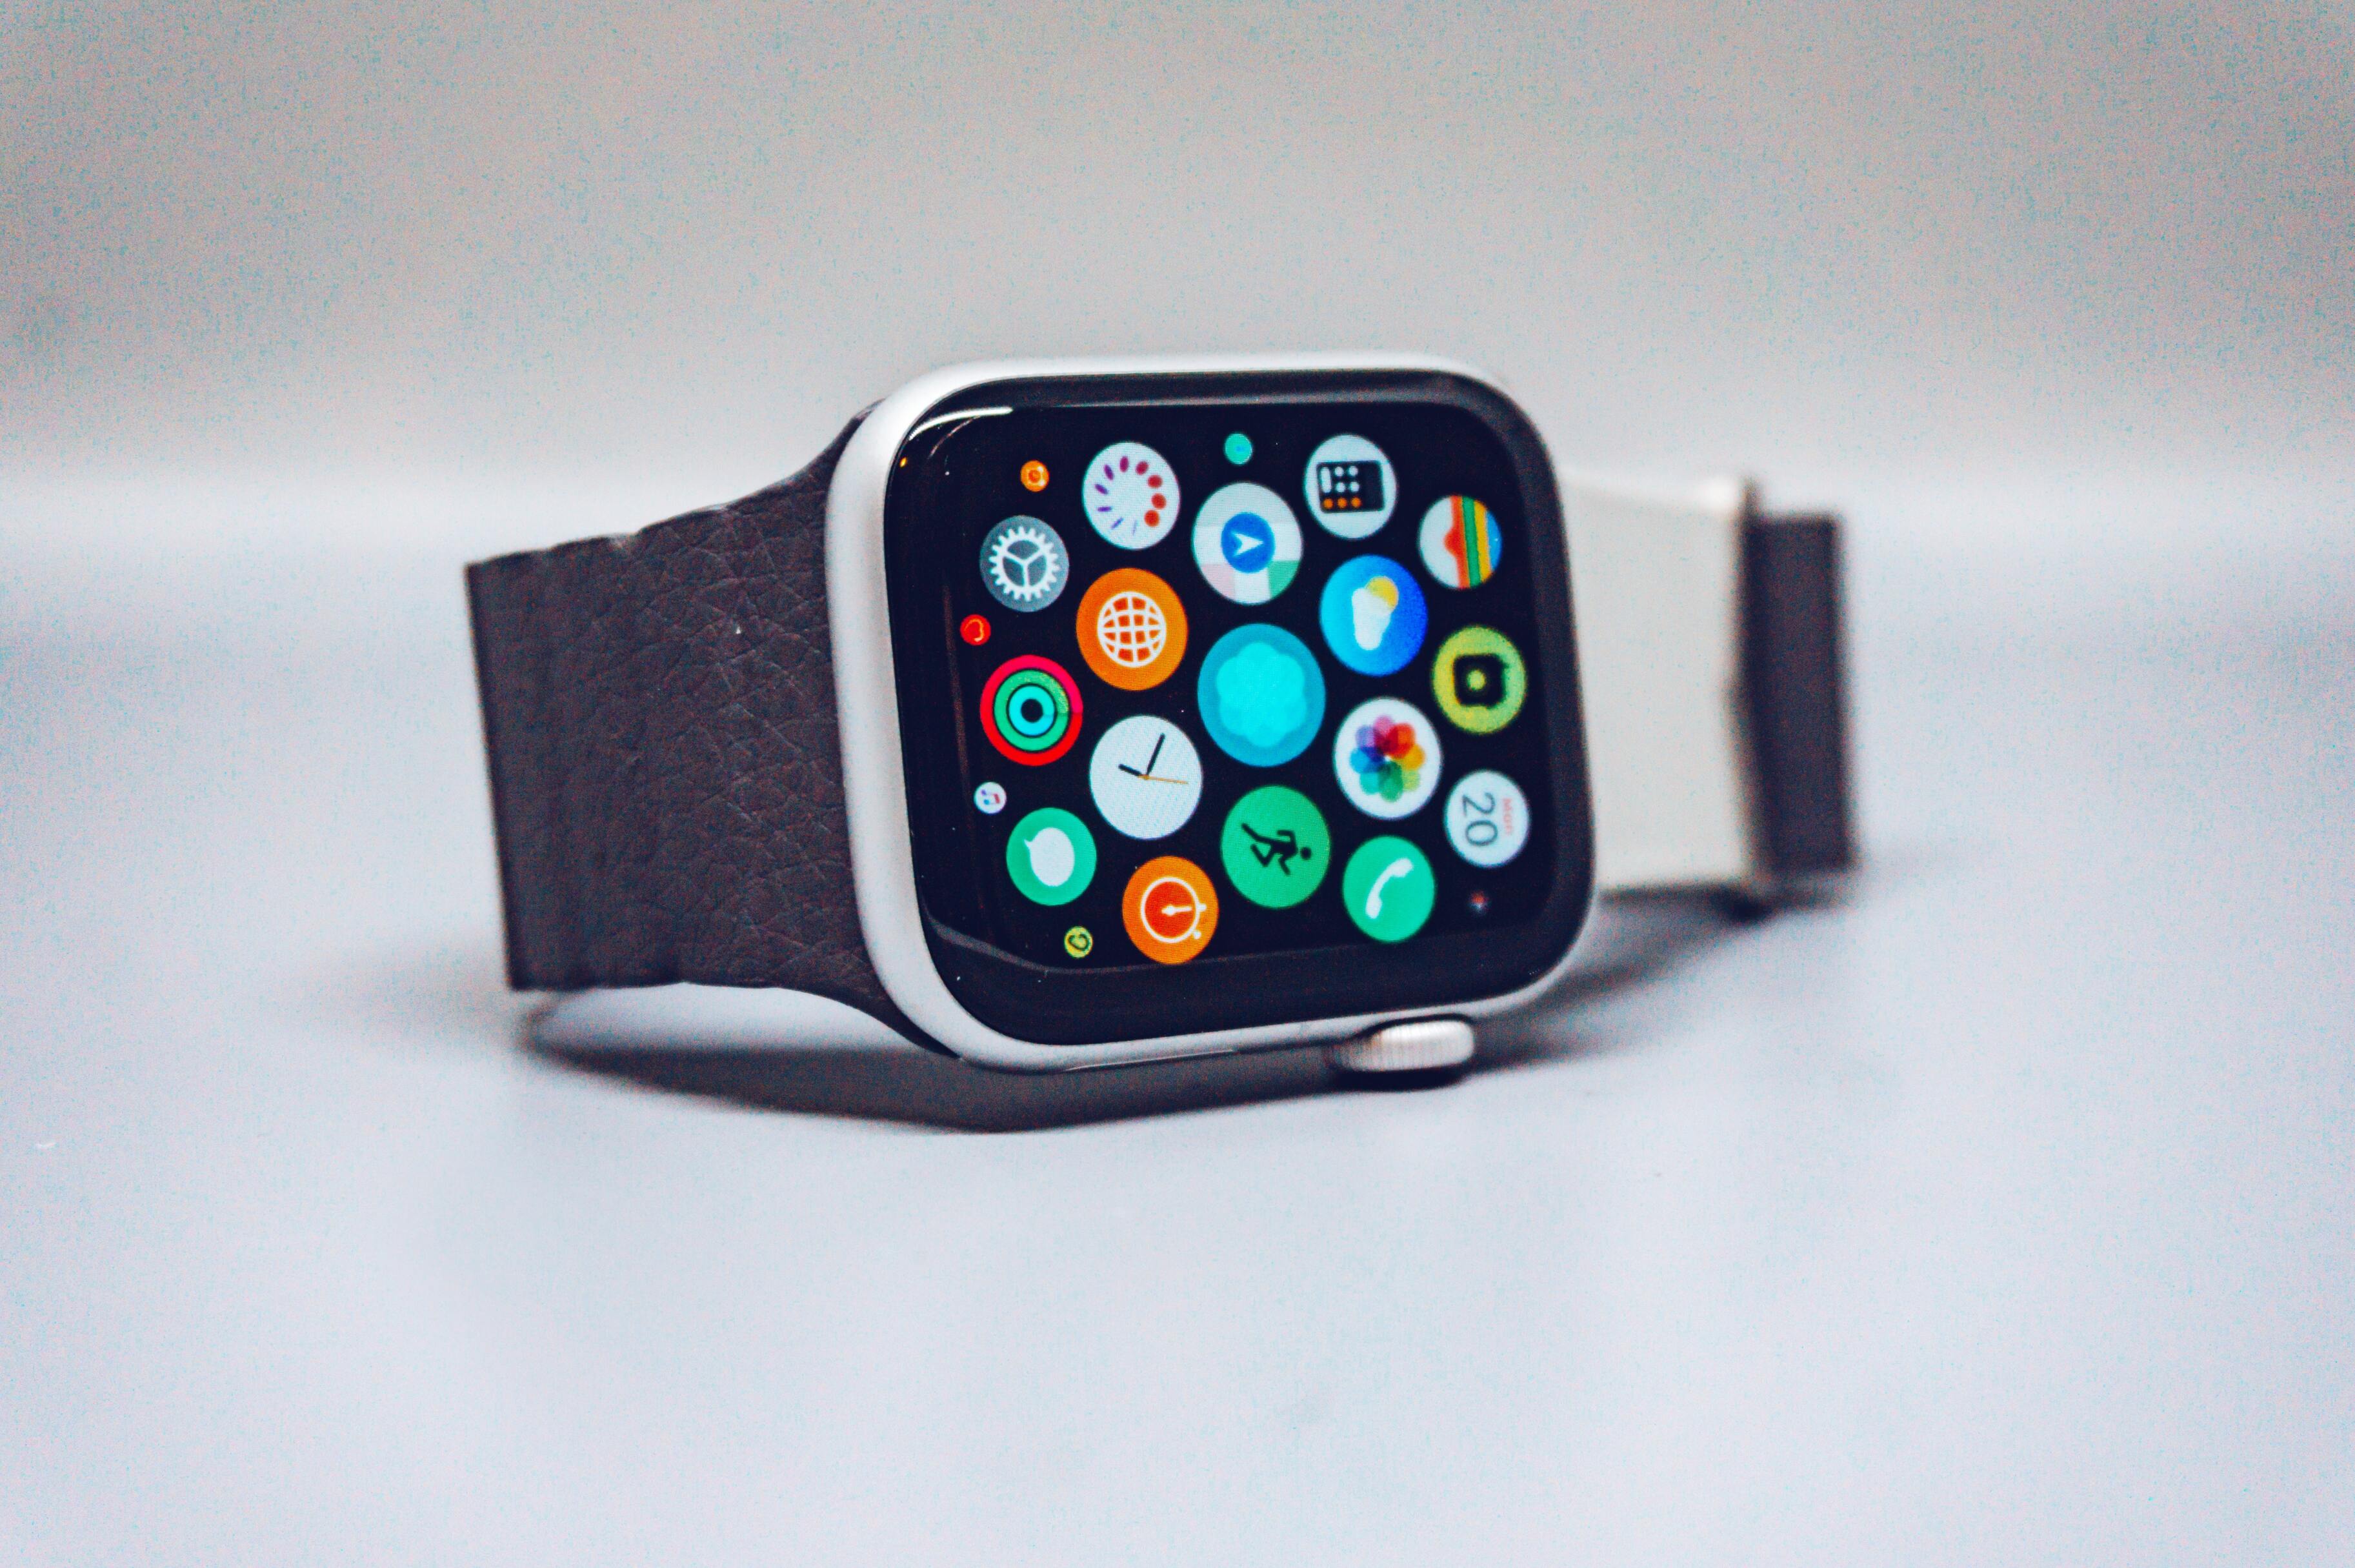 Еще одно чудо: Apple Watch вновь спасли человеку жизнь. Но он все равно парализован